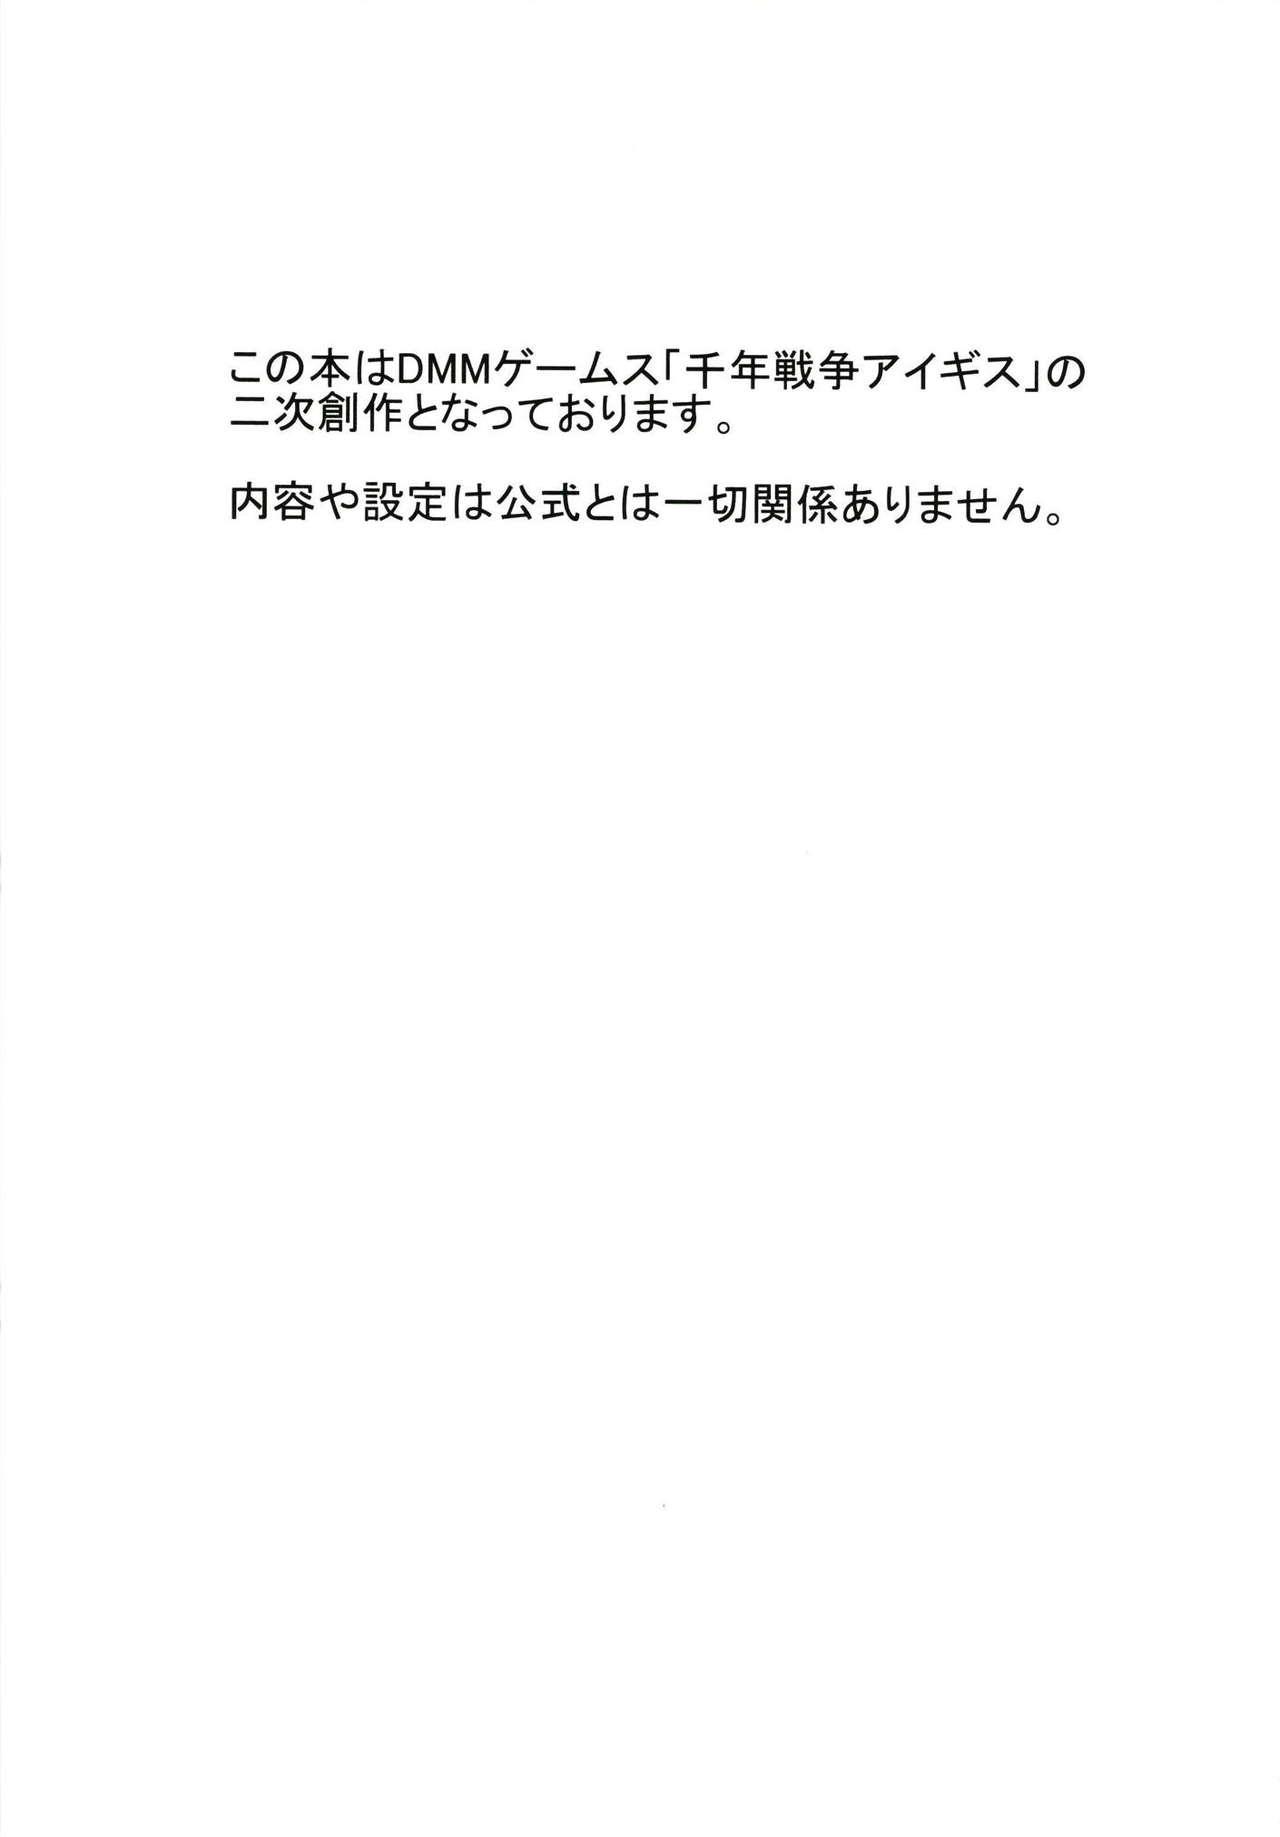 Cornudo Koukando Item ja Kimi no Kokoro wa Hiraka Nai - Sennen sensou aigis Motel - Page 2